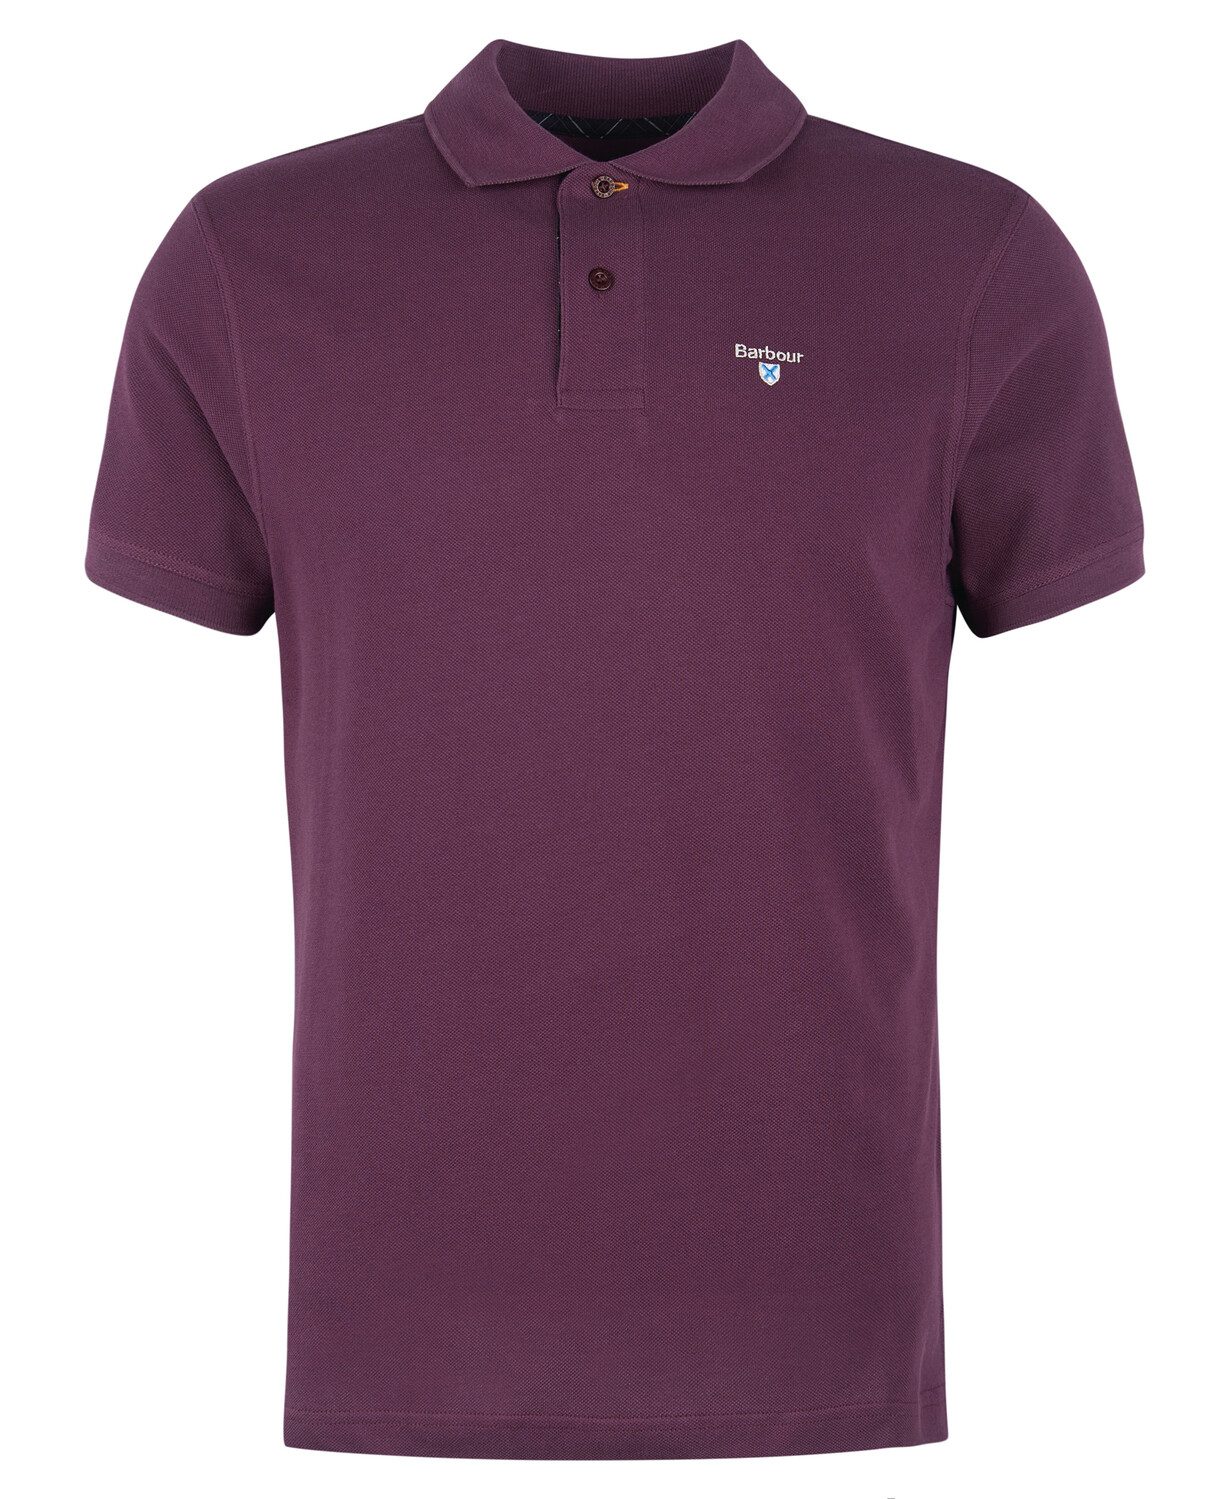 Barbour Barbour Pique Cotton Tartan Trim Polo Shirt Purple